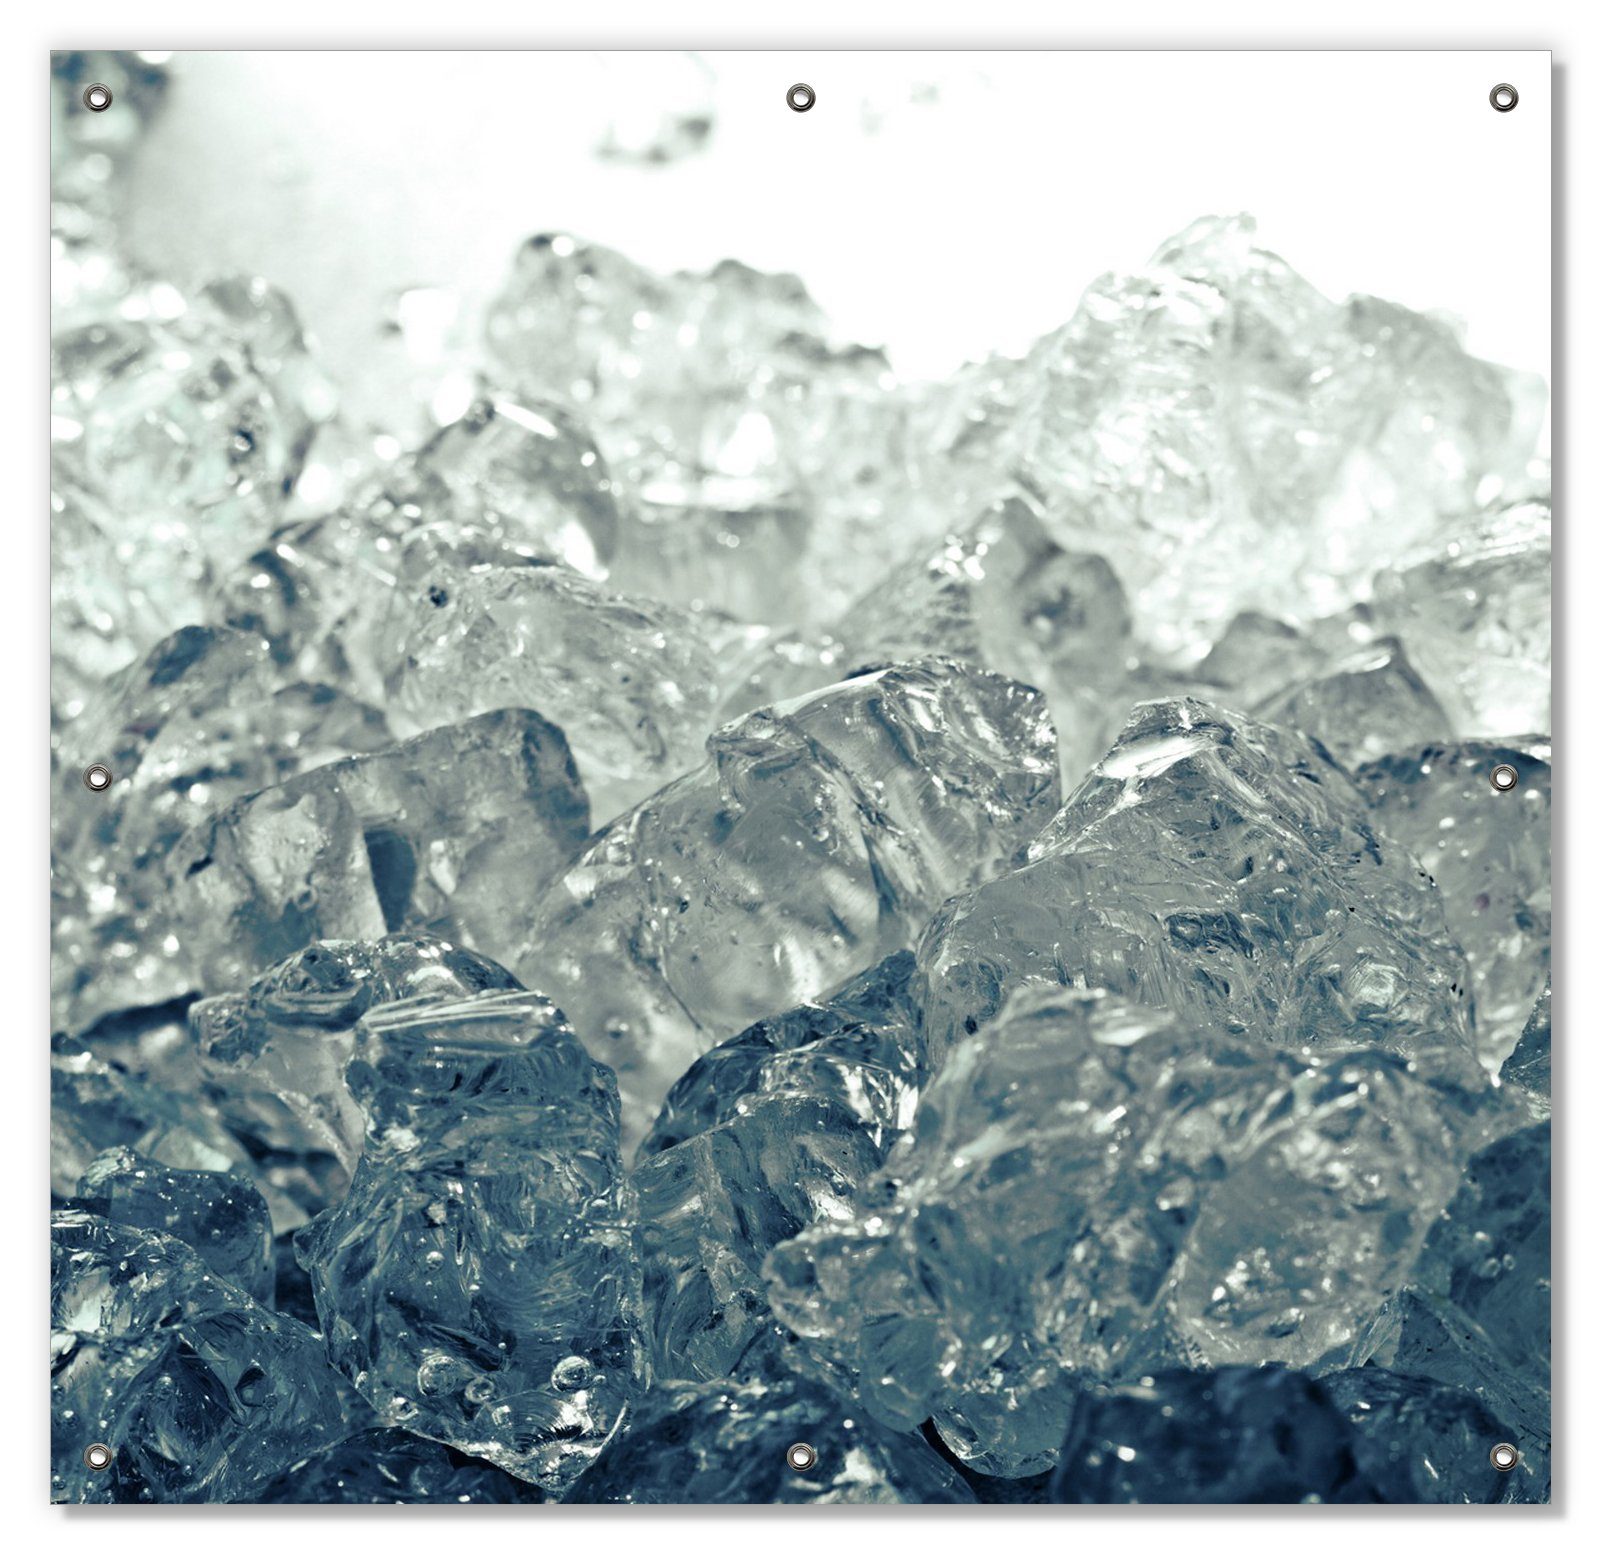 Sonnenschutz Leuchtendes mit und blau-grau, wiederablösbar Eis wiederverwendbar Wallario, in Saugnäpfen, blickdicht